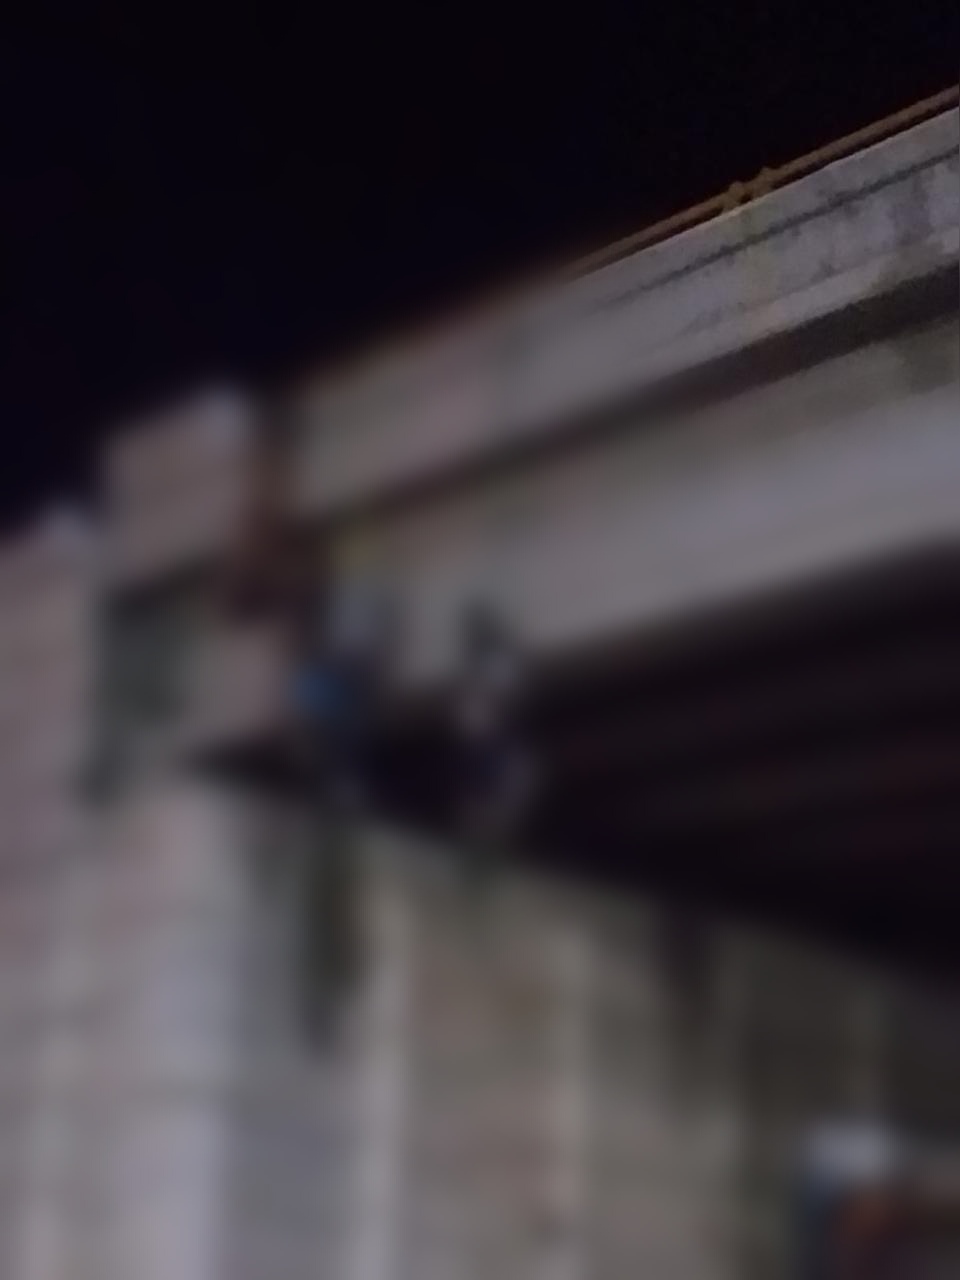 Amanece Ciudad Cuahutemoc Zacatecas con al menos 10 personas colgadas de un puente